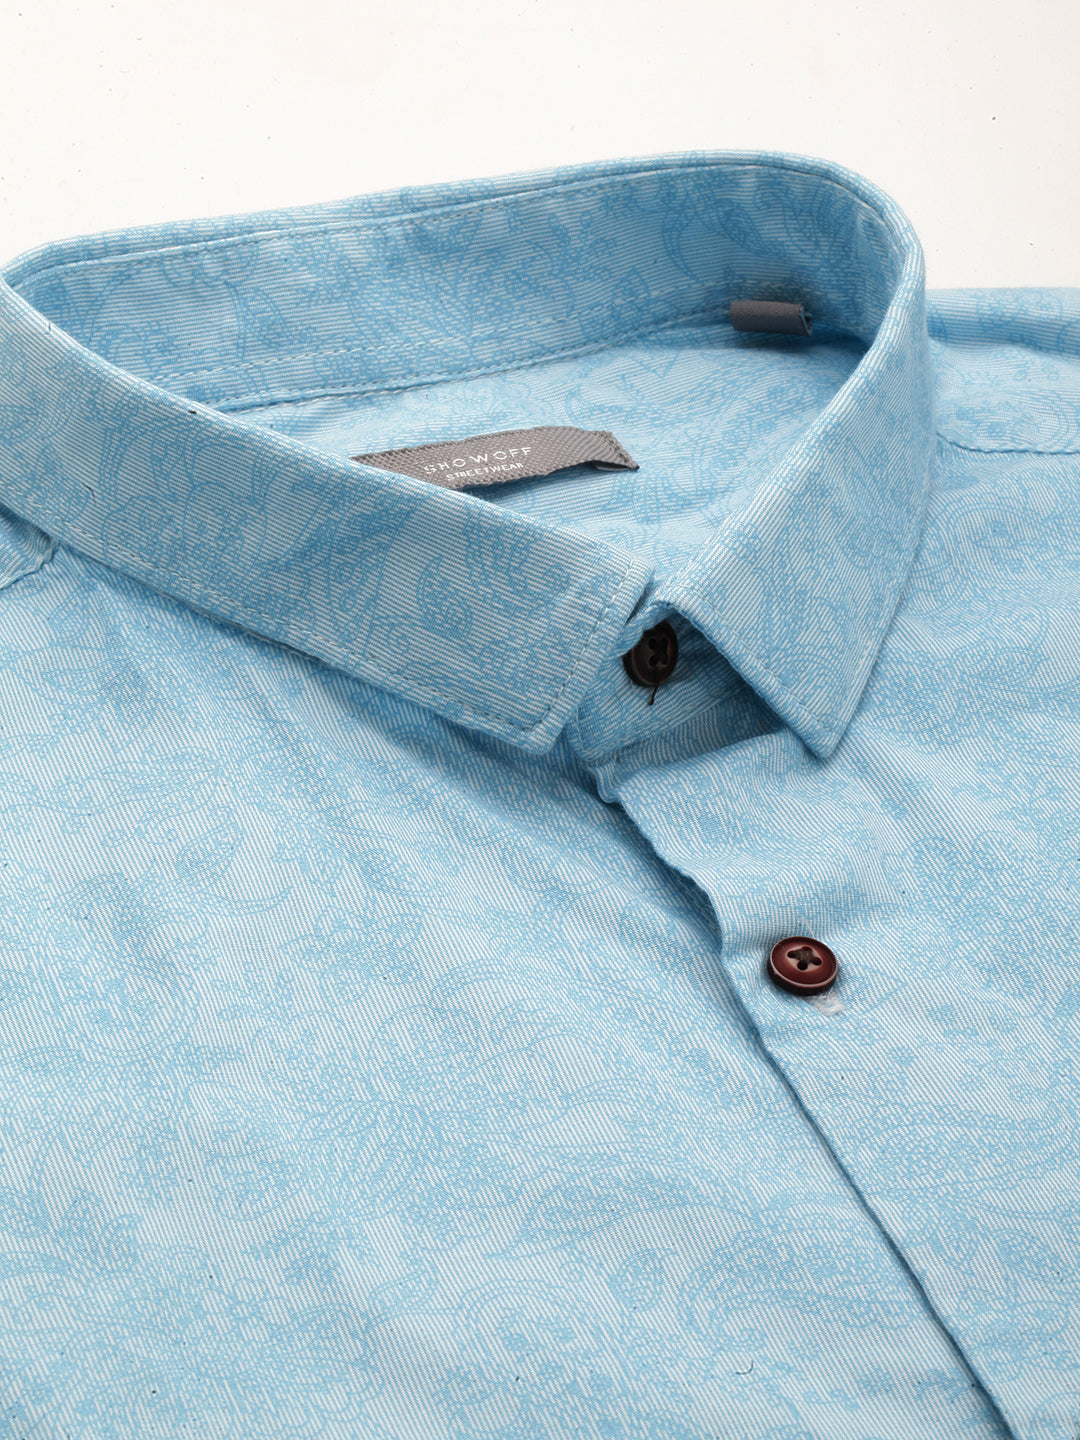 Men Blue Printed Casual Shirt